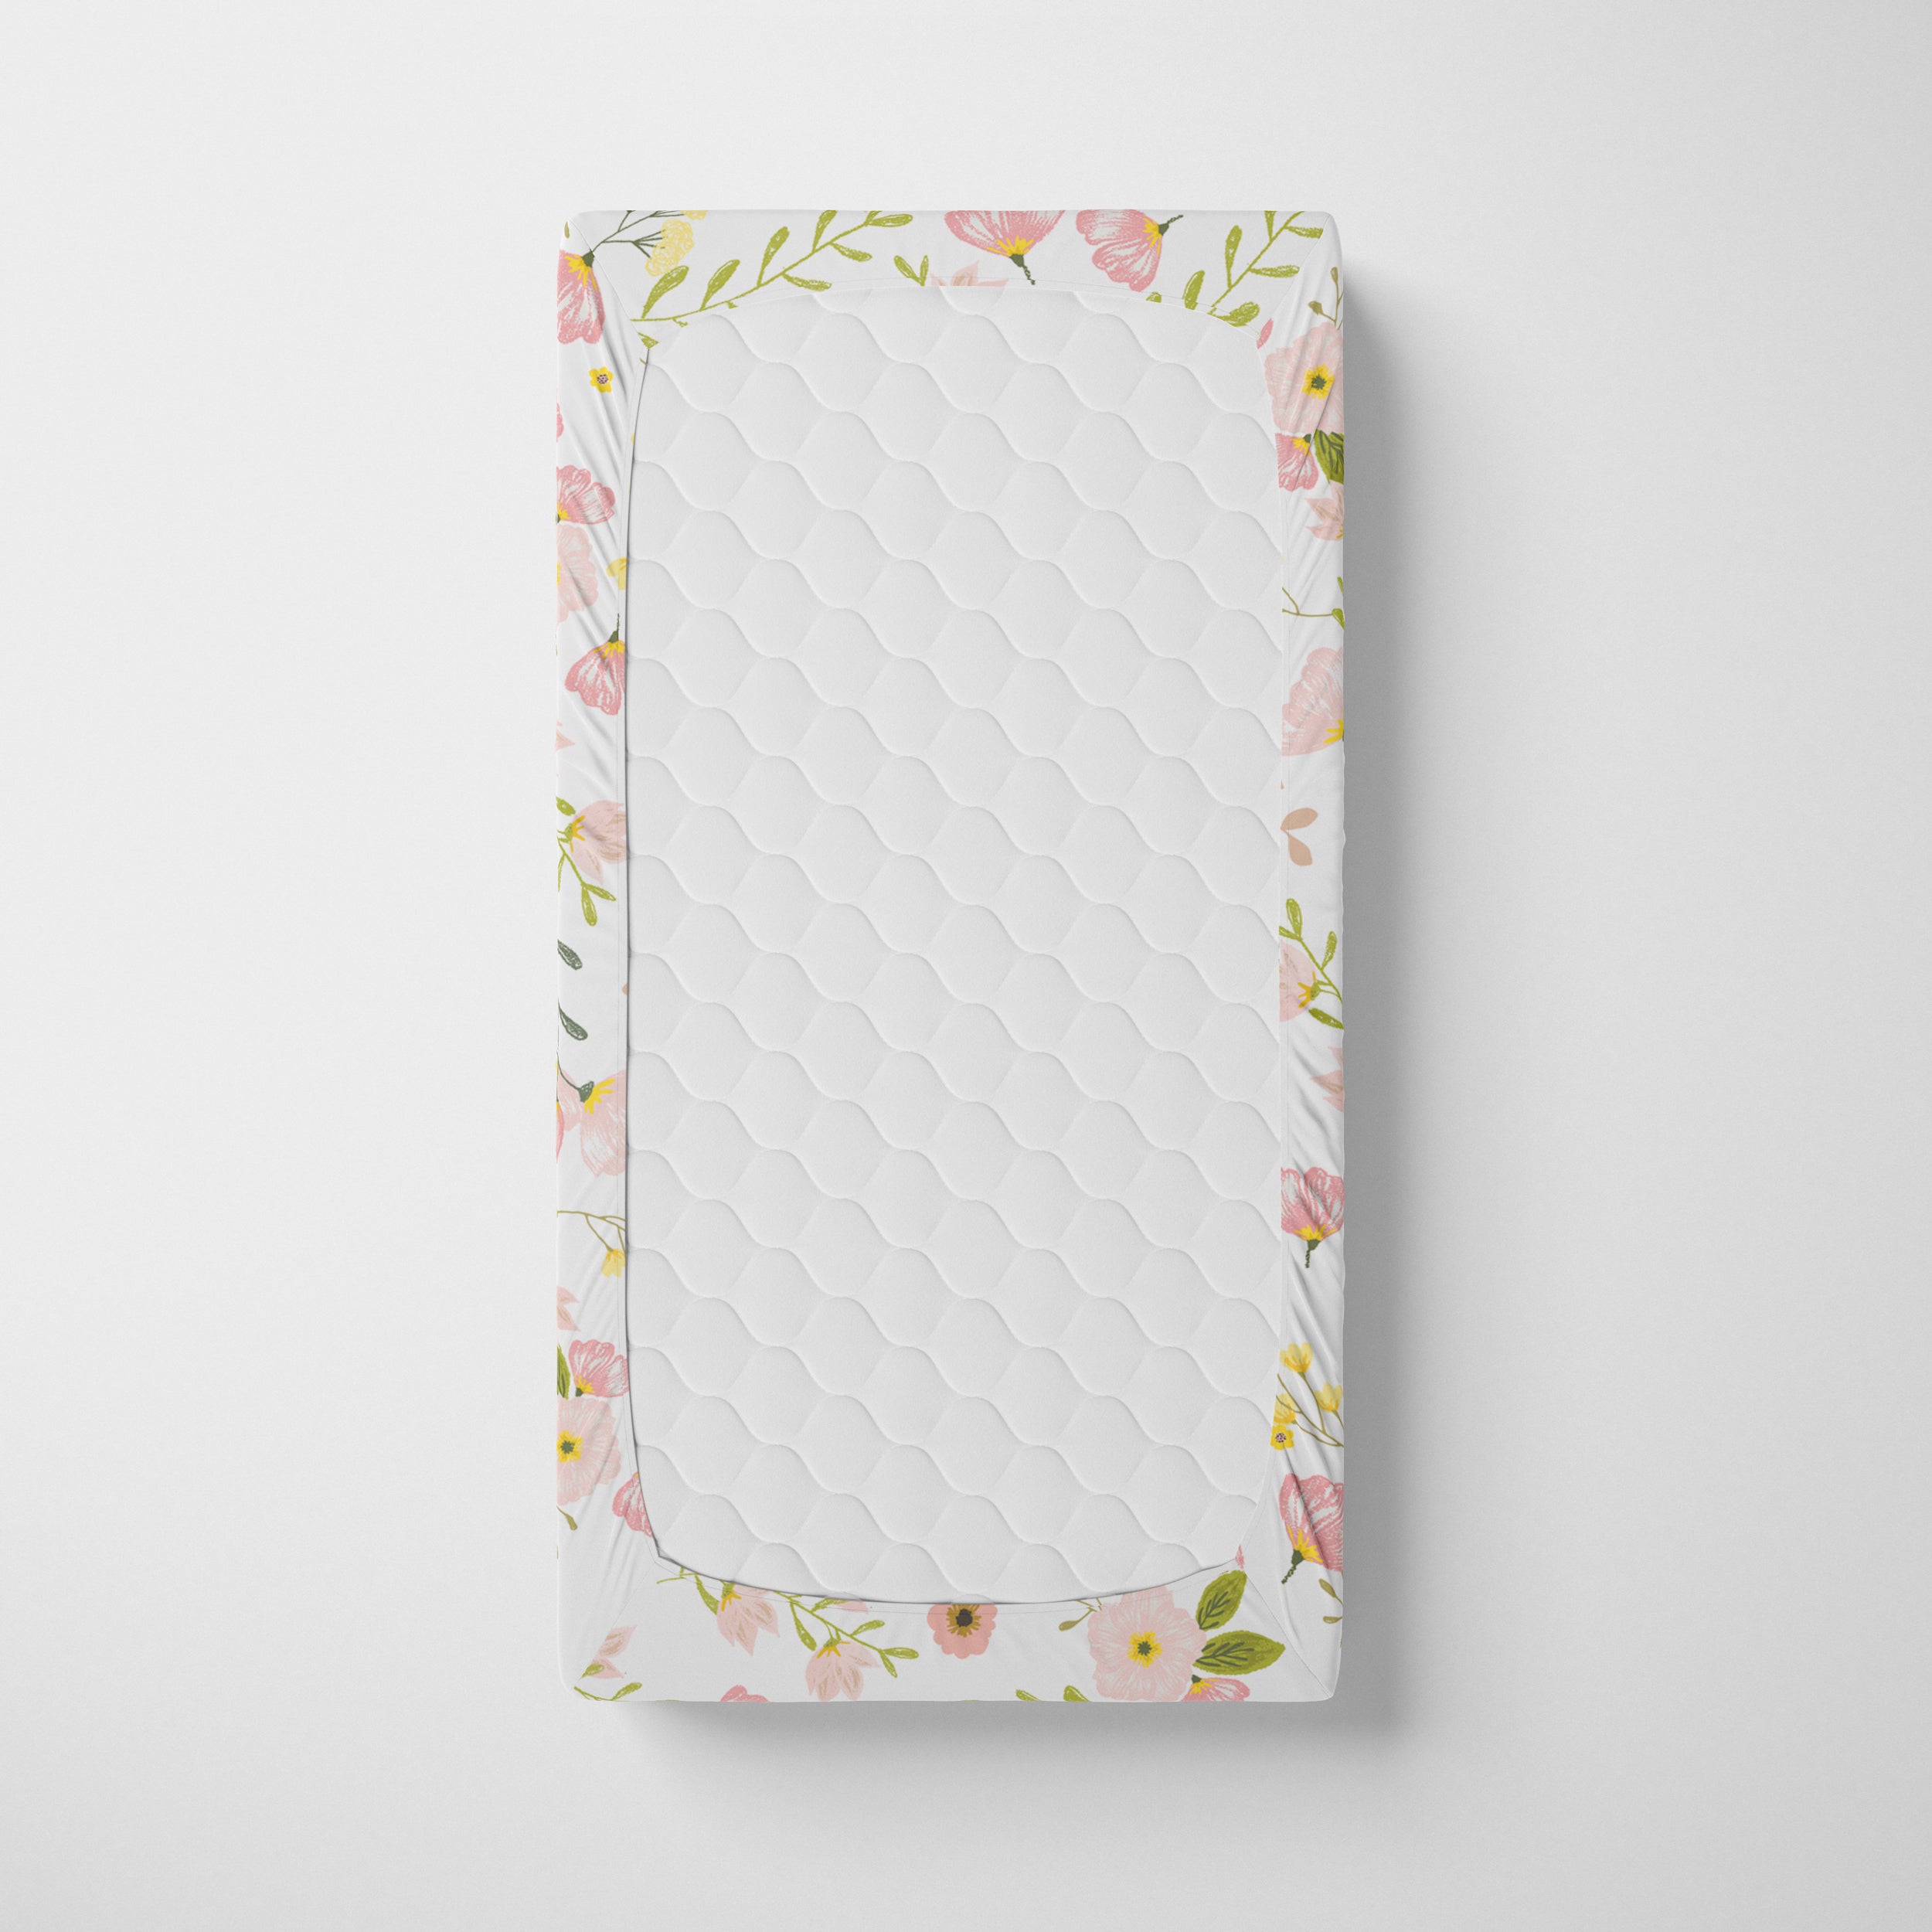 Blossom Personalized Crib Sheet